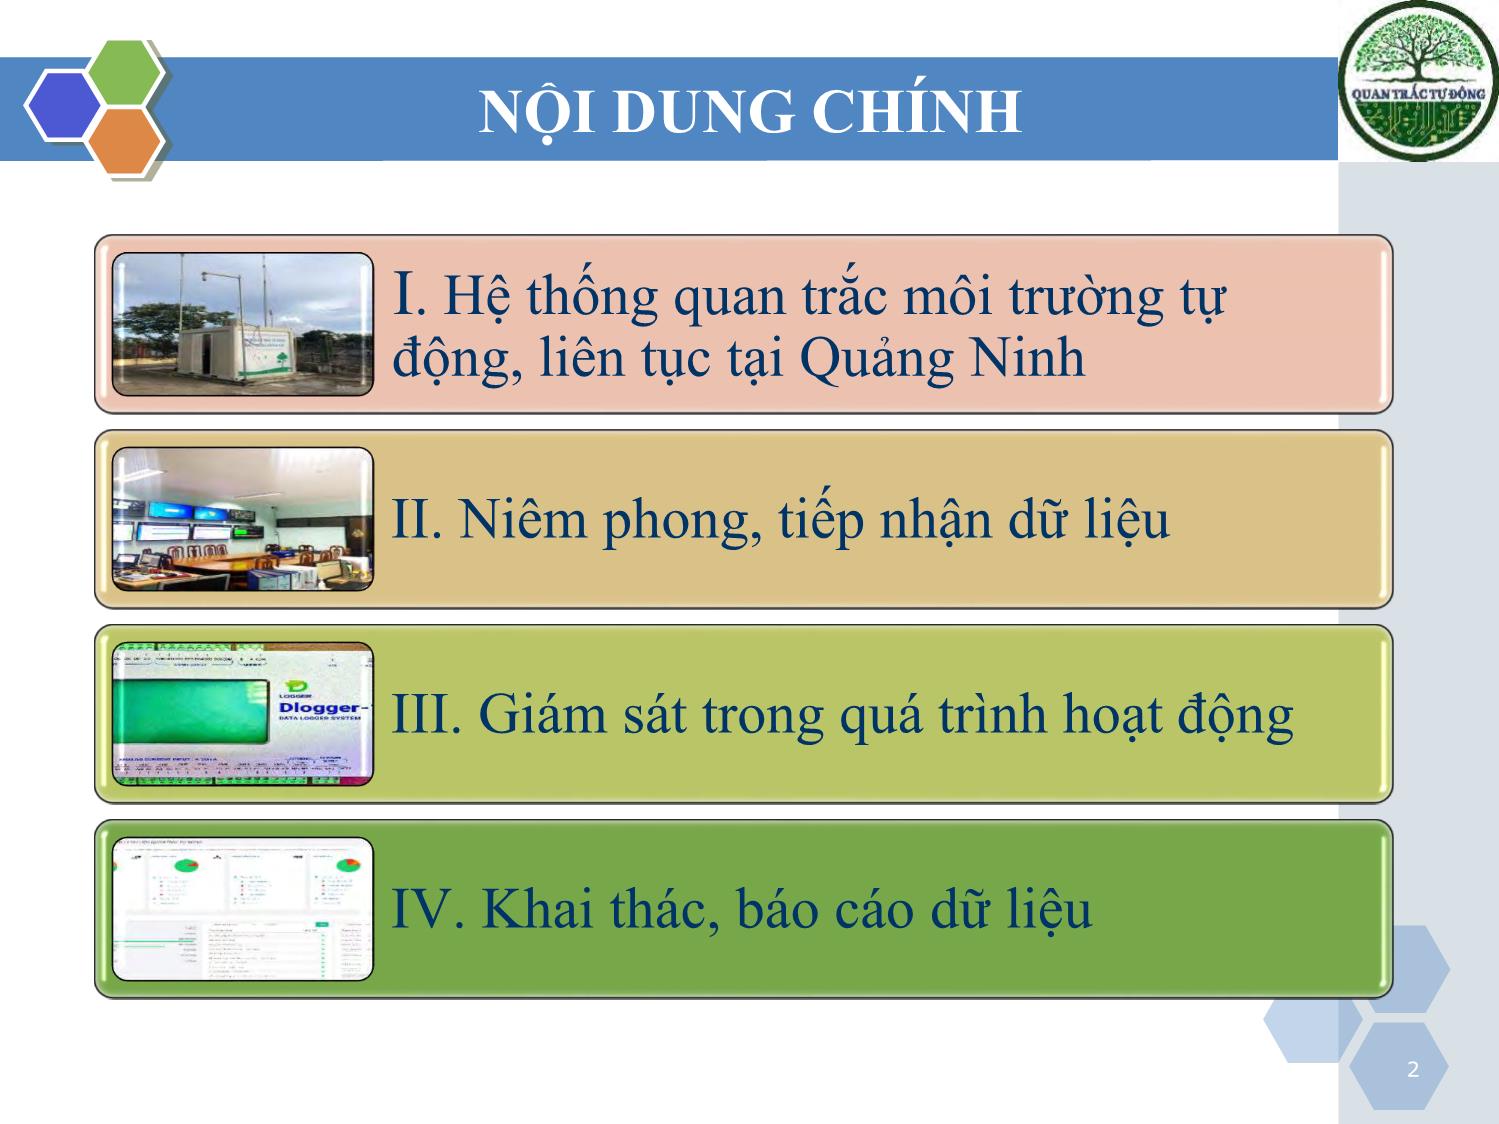 Tài liệu Công tác quản lý các đơn vị/doanh nghiệp đang vận hành các trạm quan trắc môi trường tự động, liên tục trên địa bàn tỉnh Quảng Ninh trang 2